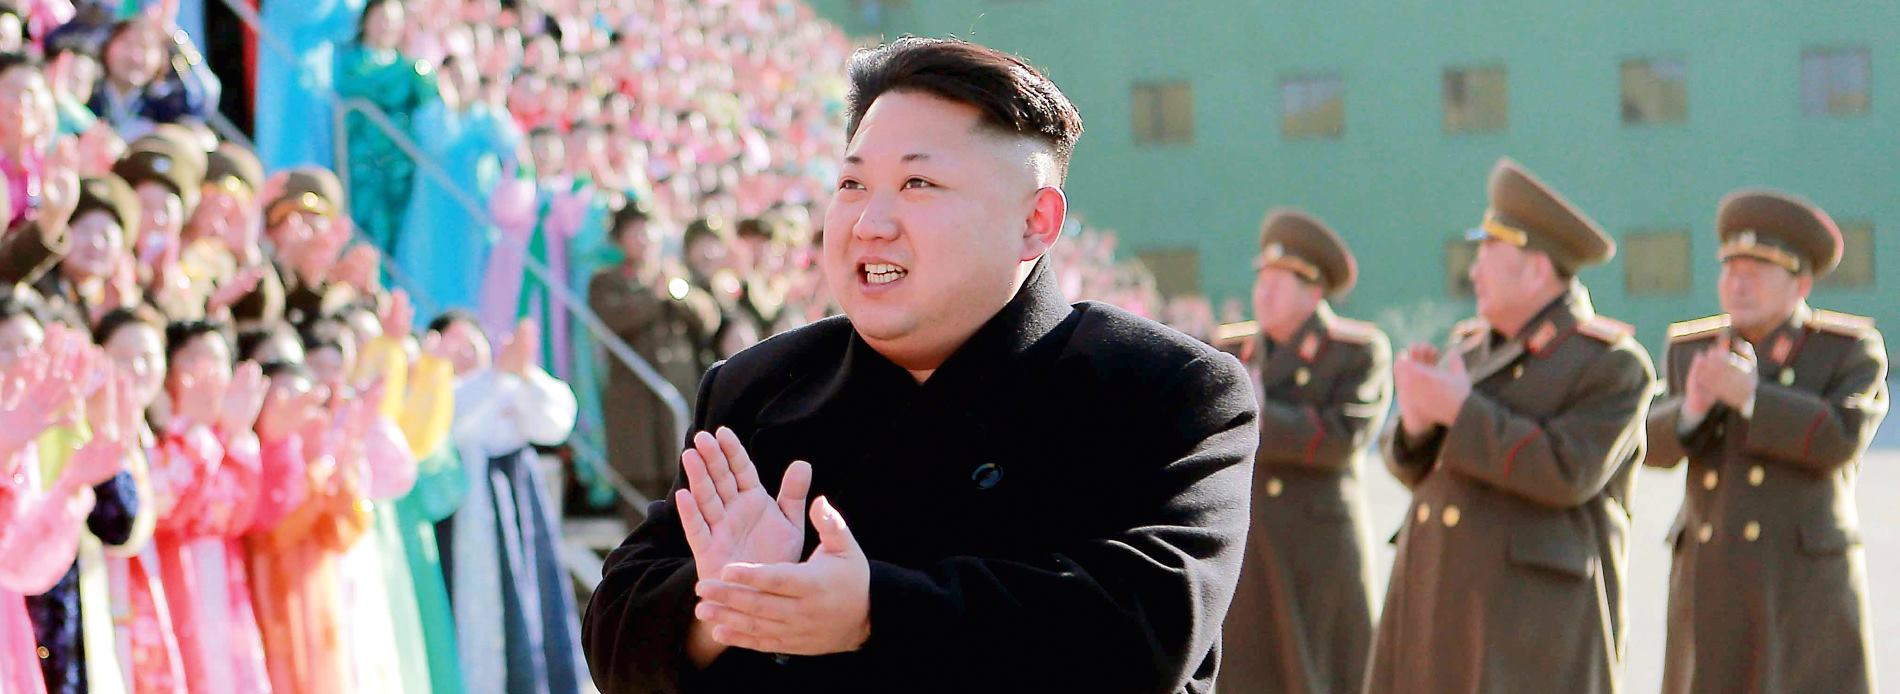 KIM JONG-UN PRIJETI RATOM? Američko-južnokorejski manevri održavaju se usprkos prijetnjama Pjongjanga